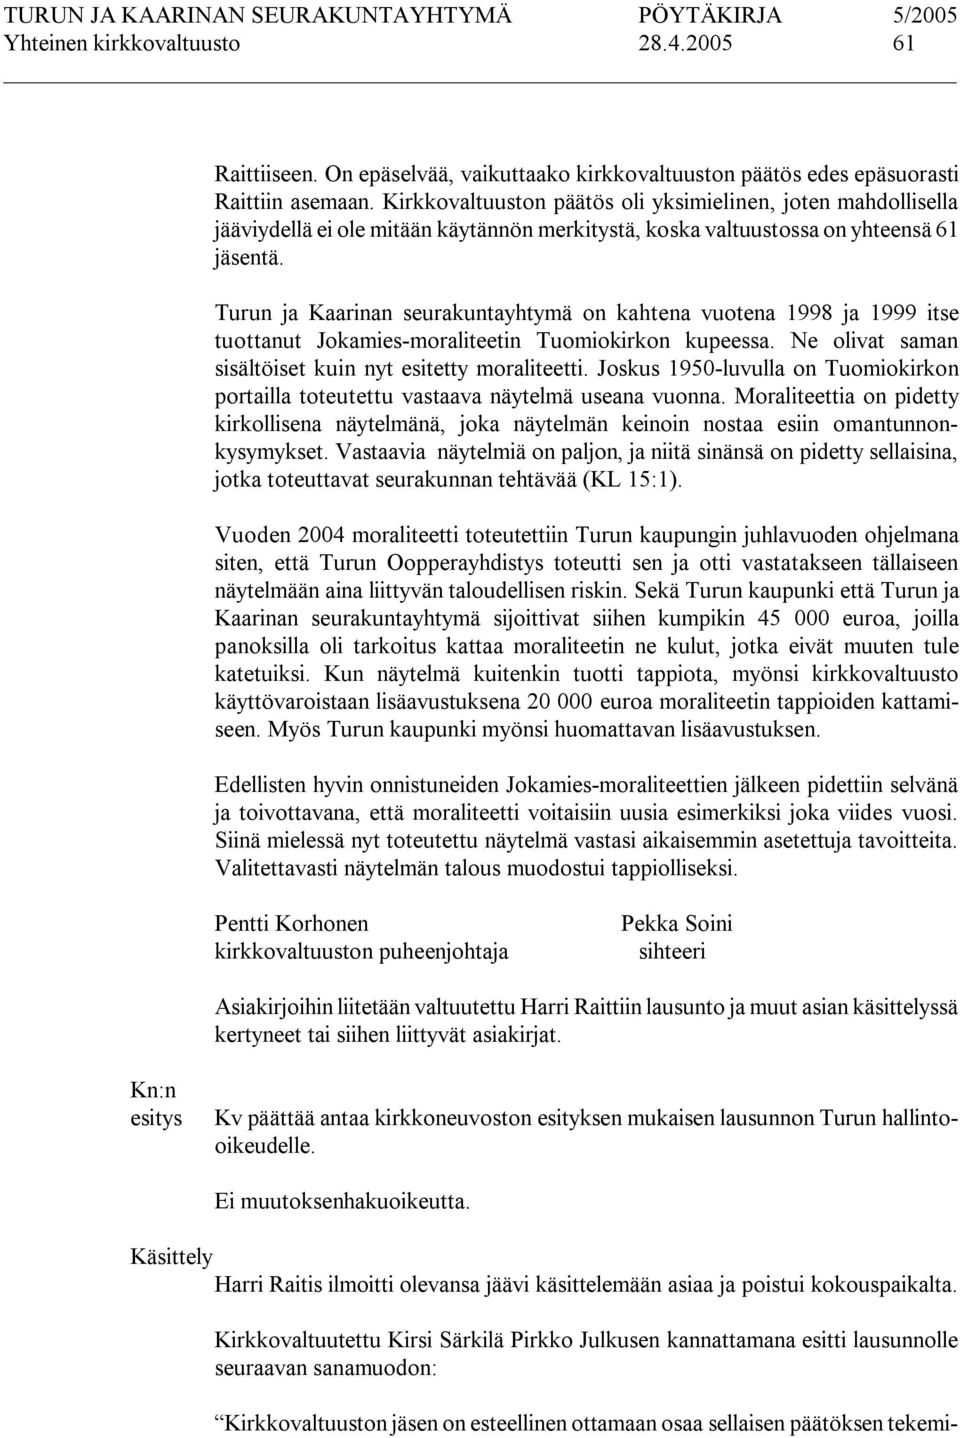 Turun ja Kaarinan seurakuntayhtymä on kahtena vuotena 1998 ja 1999 itse tuottanut Jokamies moraliteetin Tuomiokirkon kupeessa. Ne olivat saman sisältöiset kuin nyt esitetty moraliteetti.